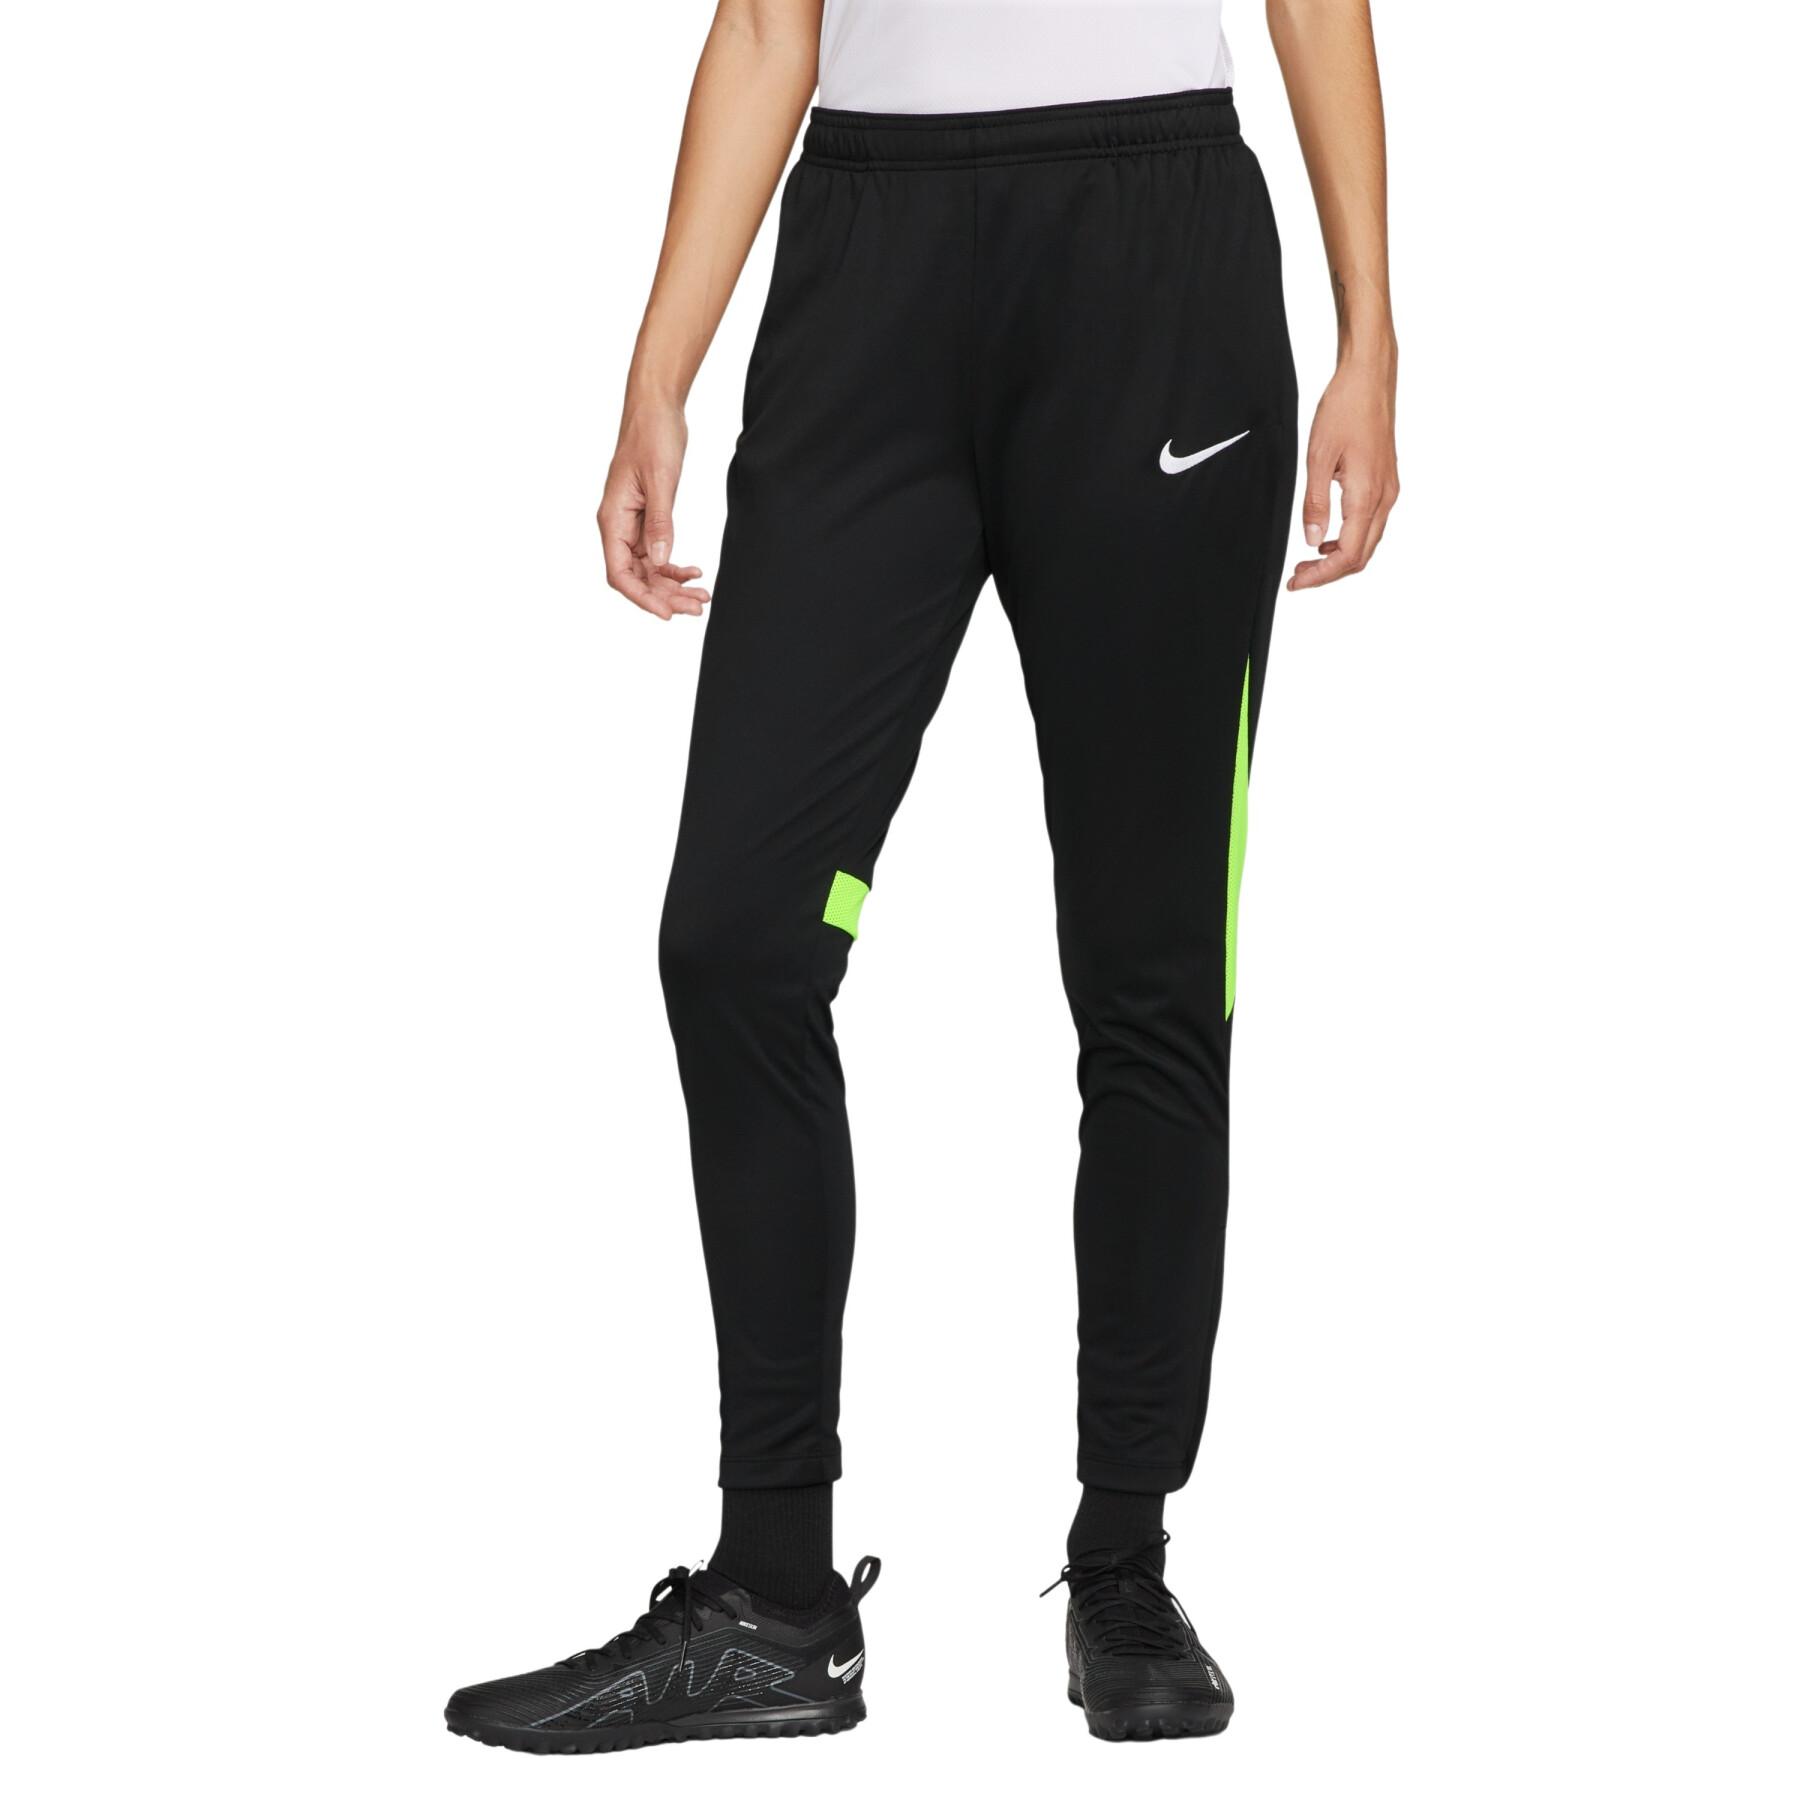 Calças Nike Dri-FIT Academy Pro para mulher - DH9273-011 - Preto e verde